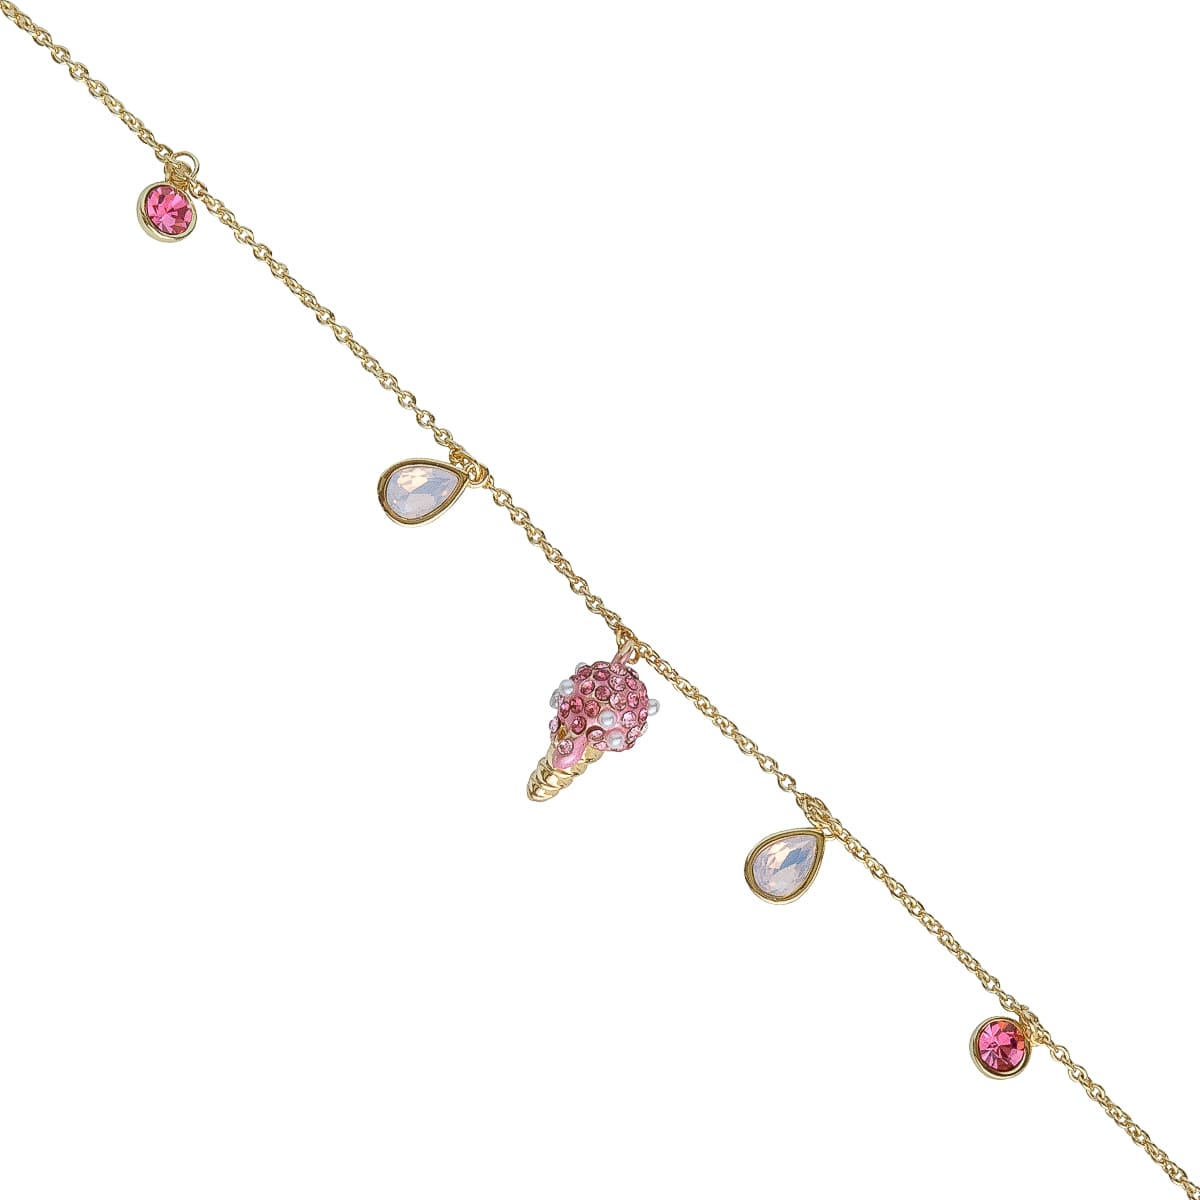 K.V. Fuchs Design Schmuck Damen Armband mit Eistüte in gold mit Schmucksteinen in pink-rosa-weiß »A-22-28«